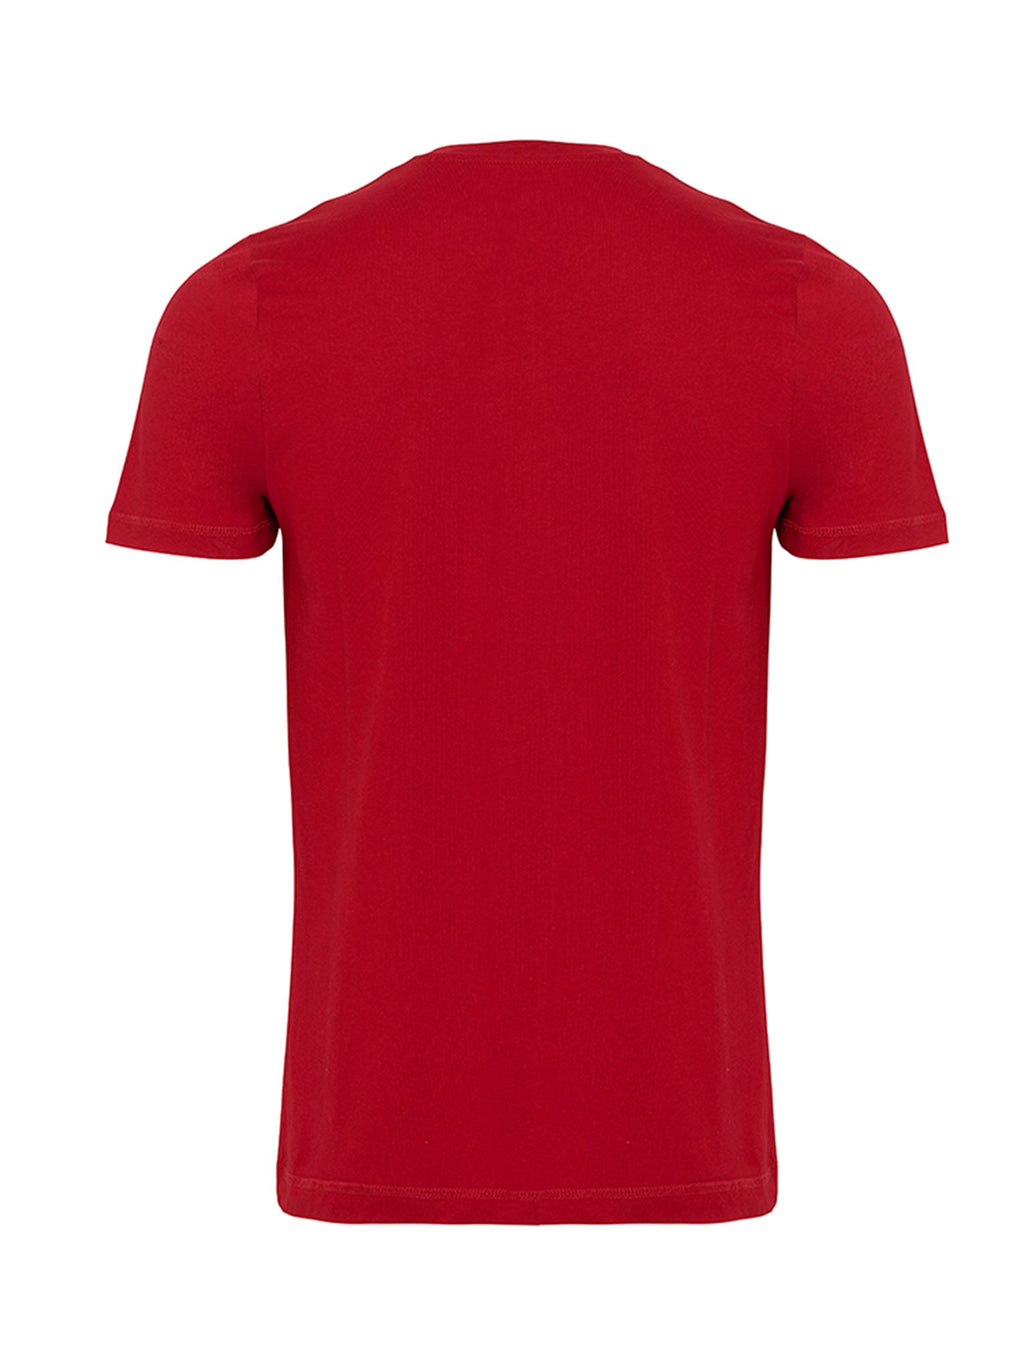 Camiseta básica orgánica - rojo